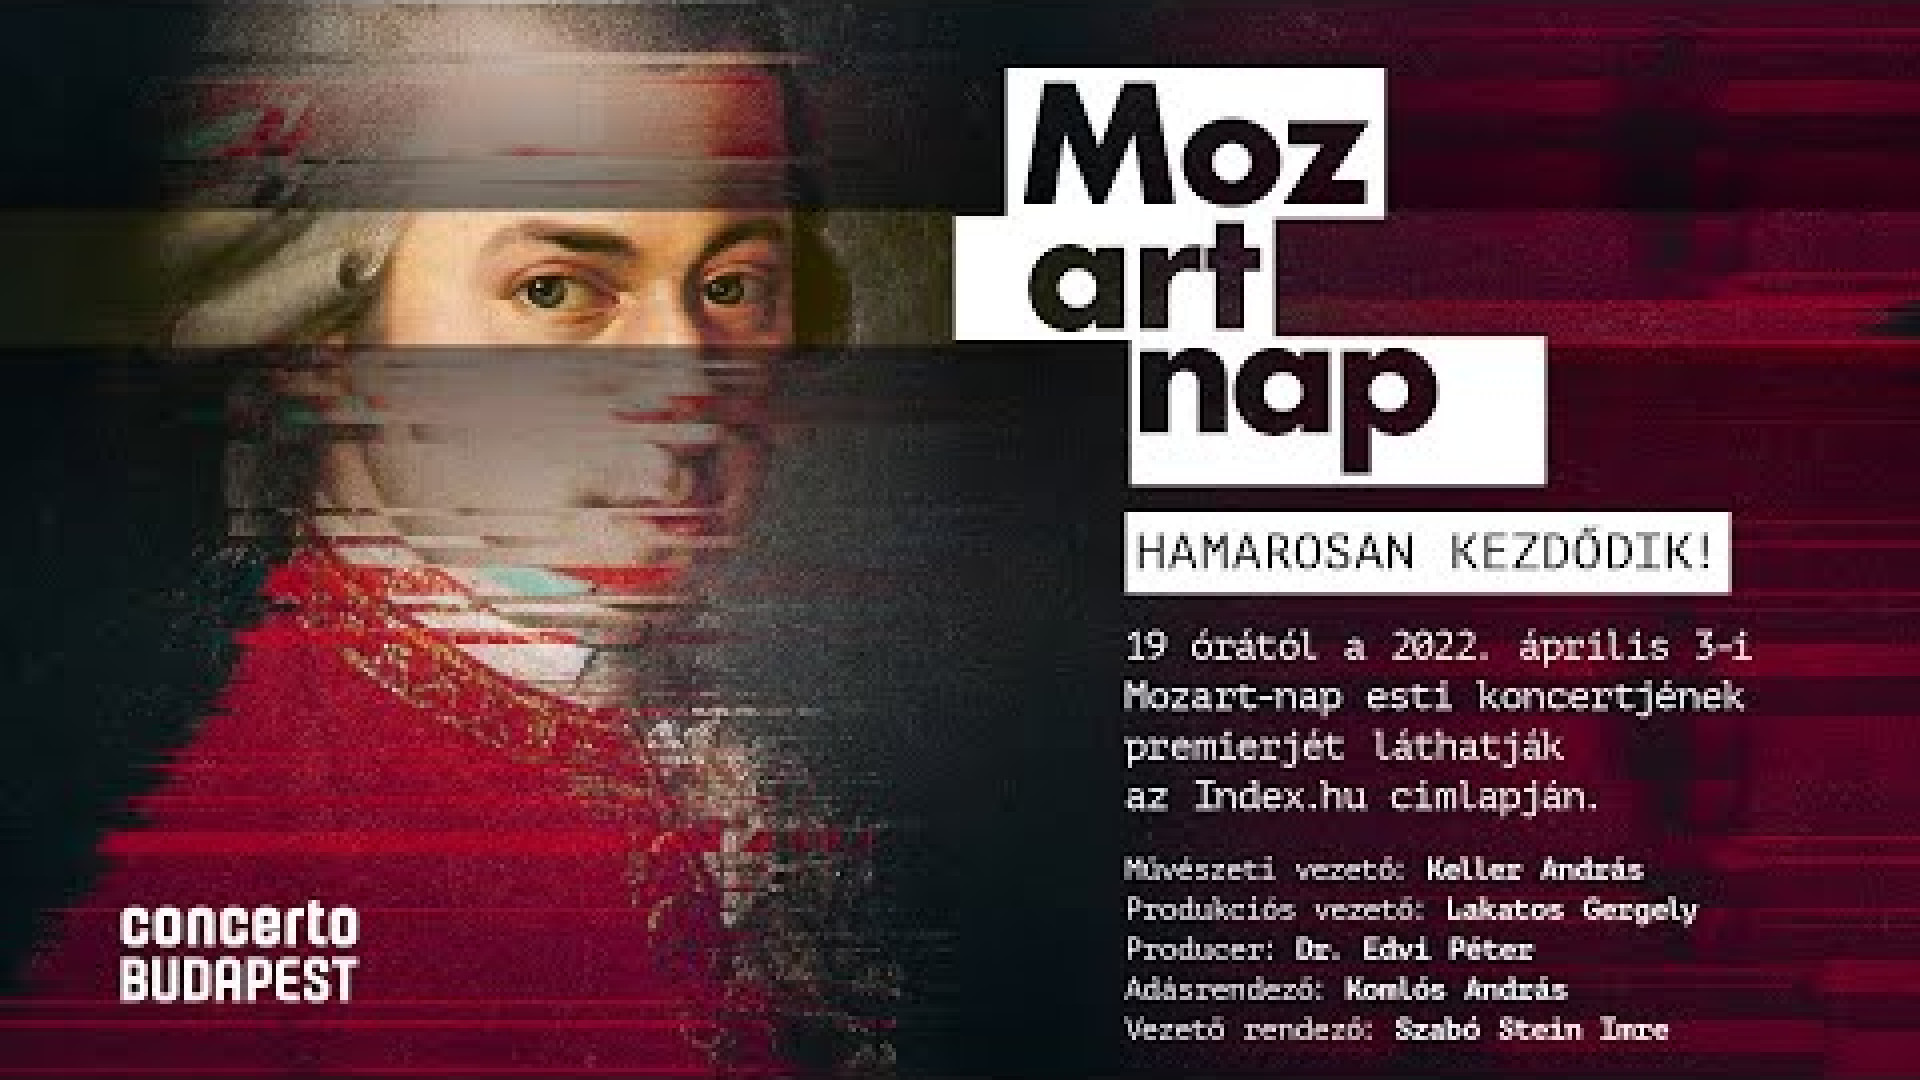 Mozart day 2022 | Final concert